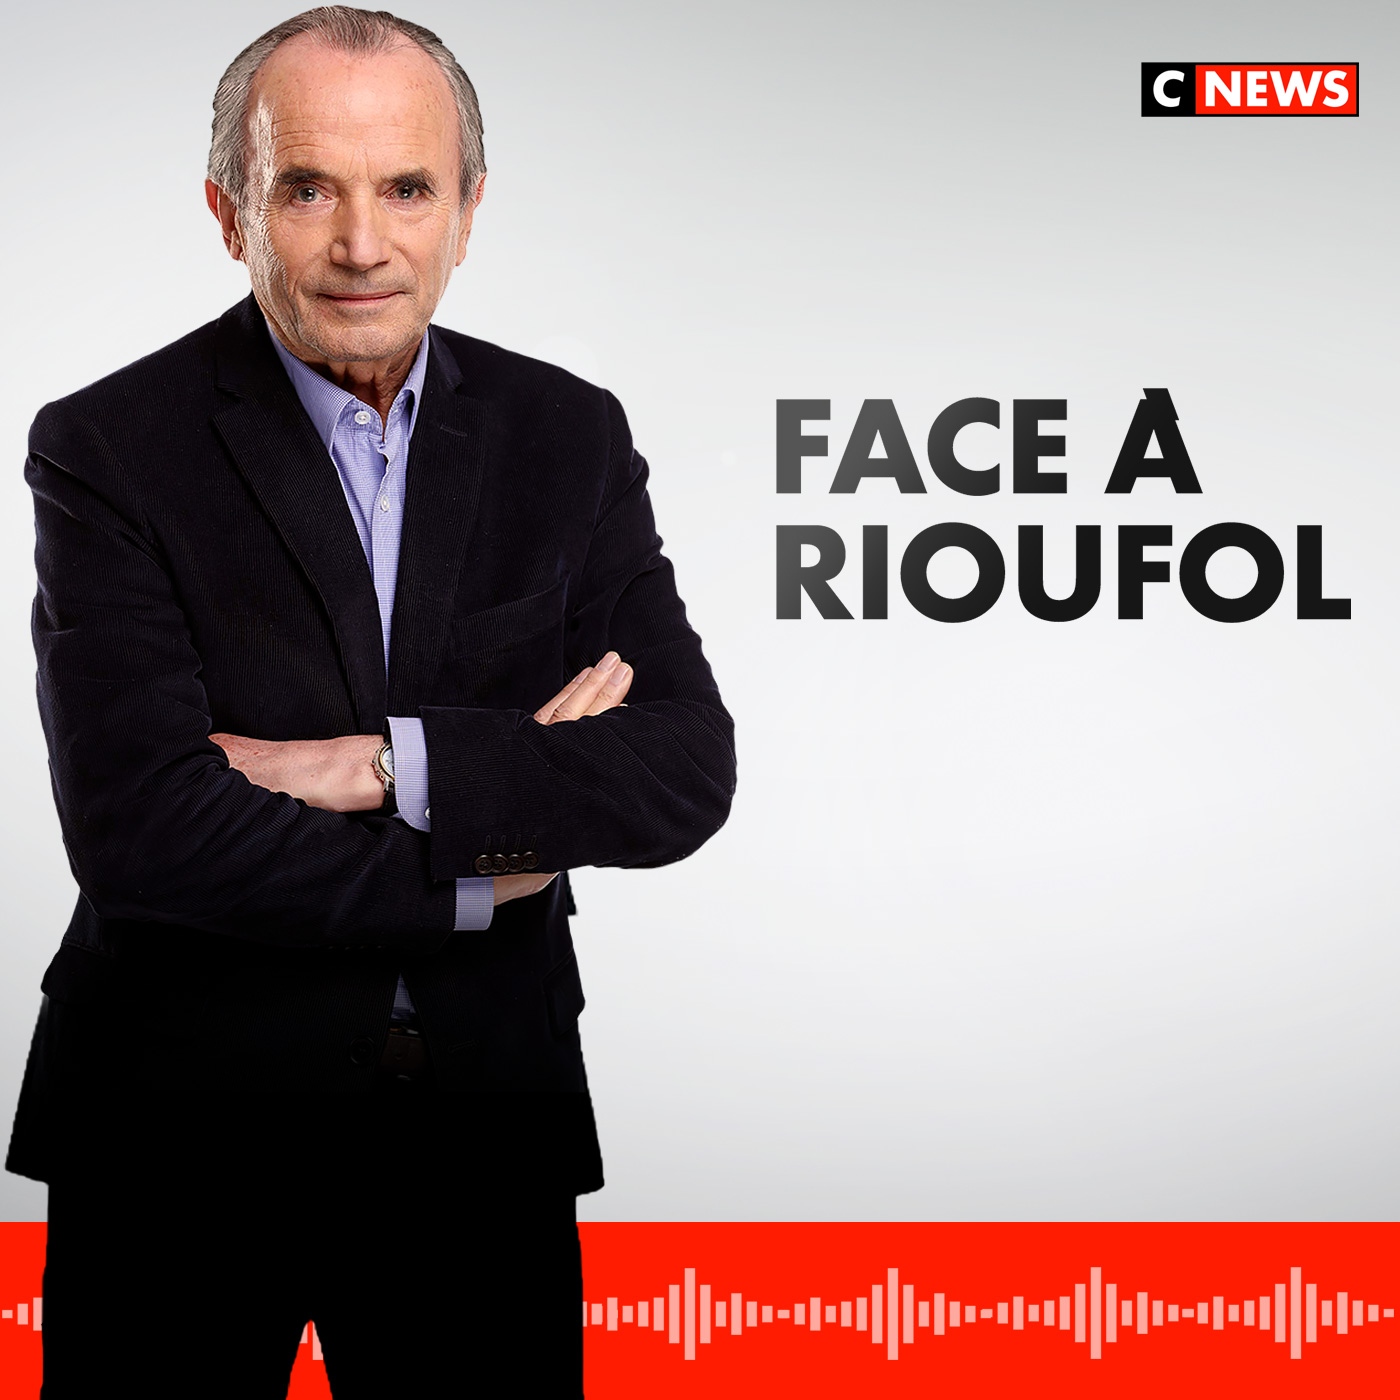 www.cnews.fr